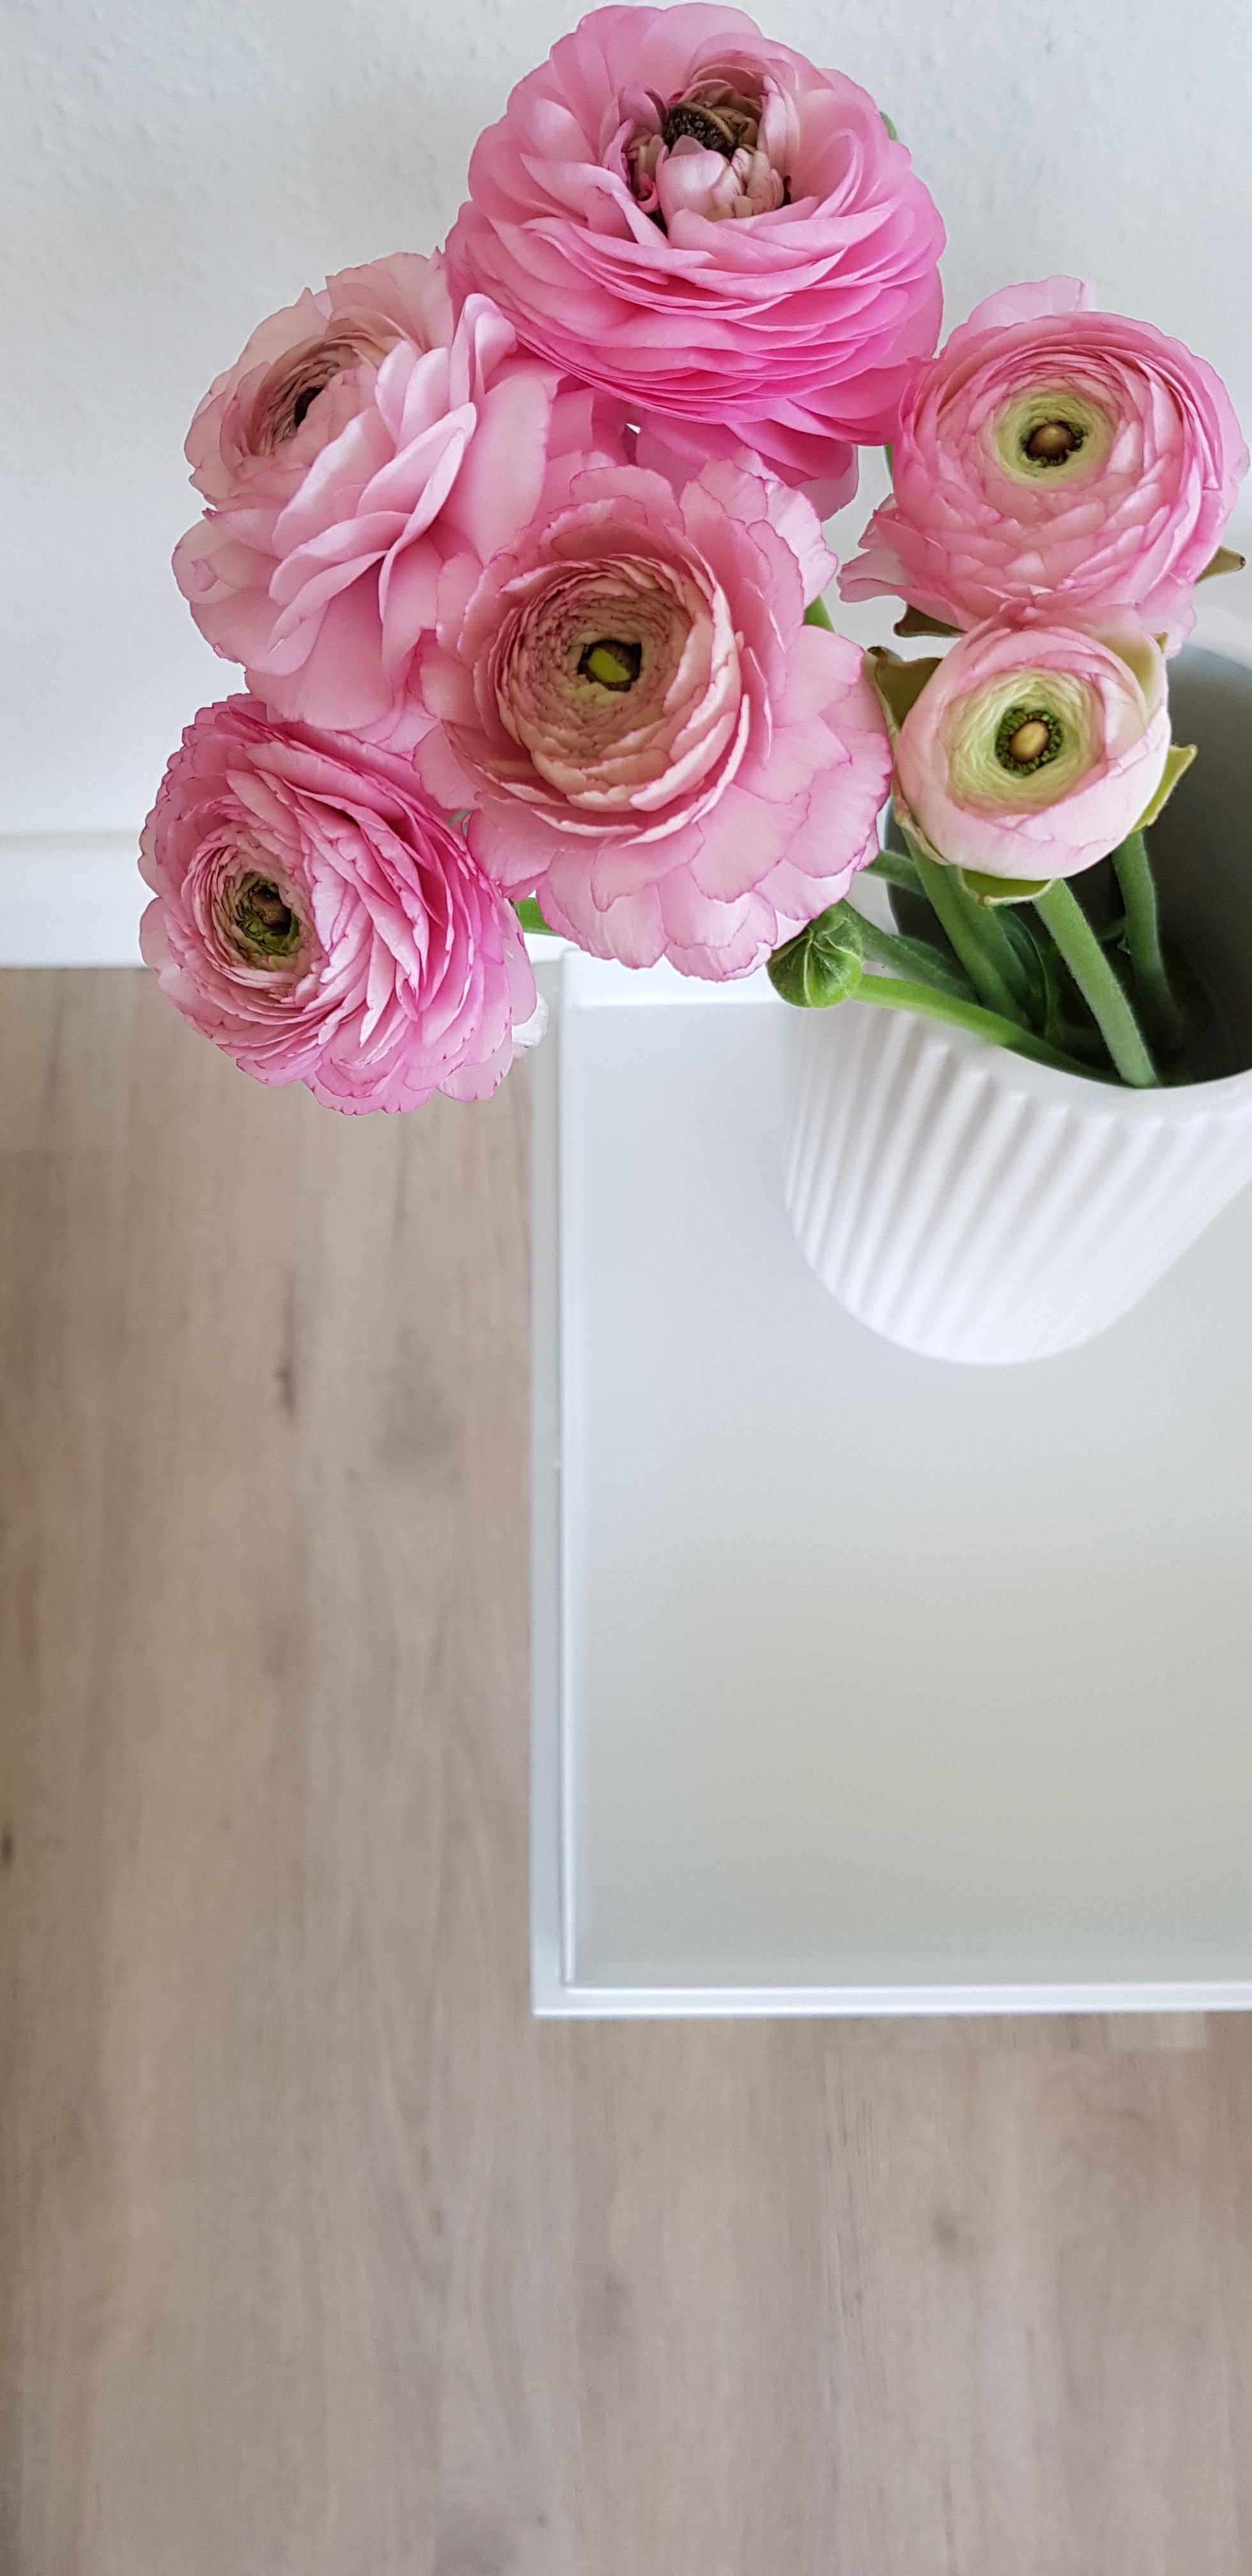 Bisschen Farbe...Zeit für Ranunkeln 🖤
#freshflowers #flowers #blumen #frühling #couchstyle 